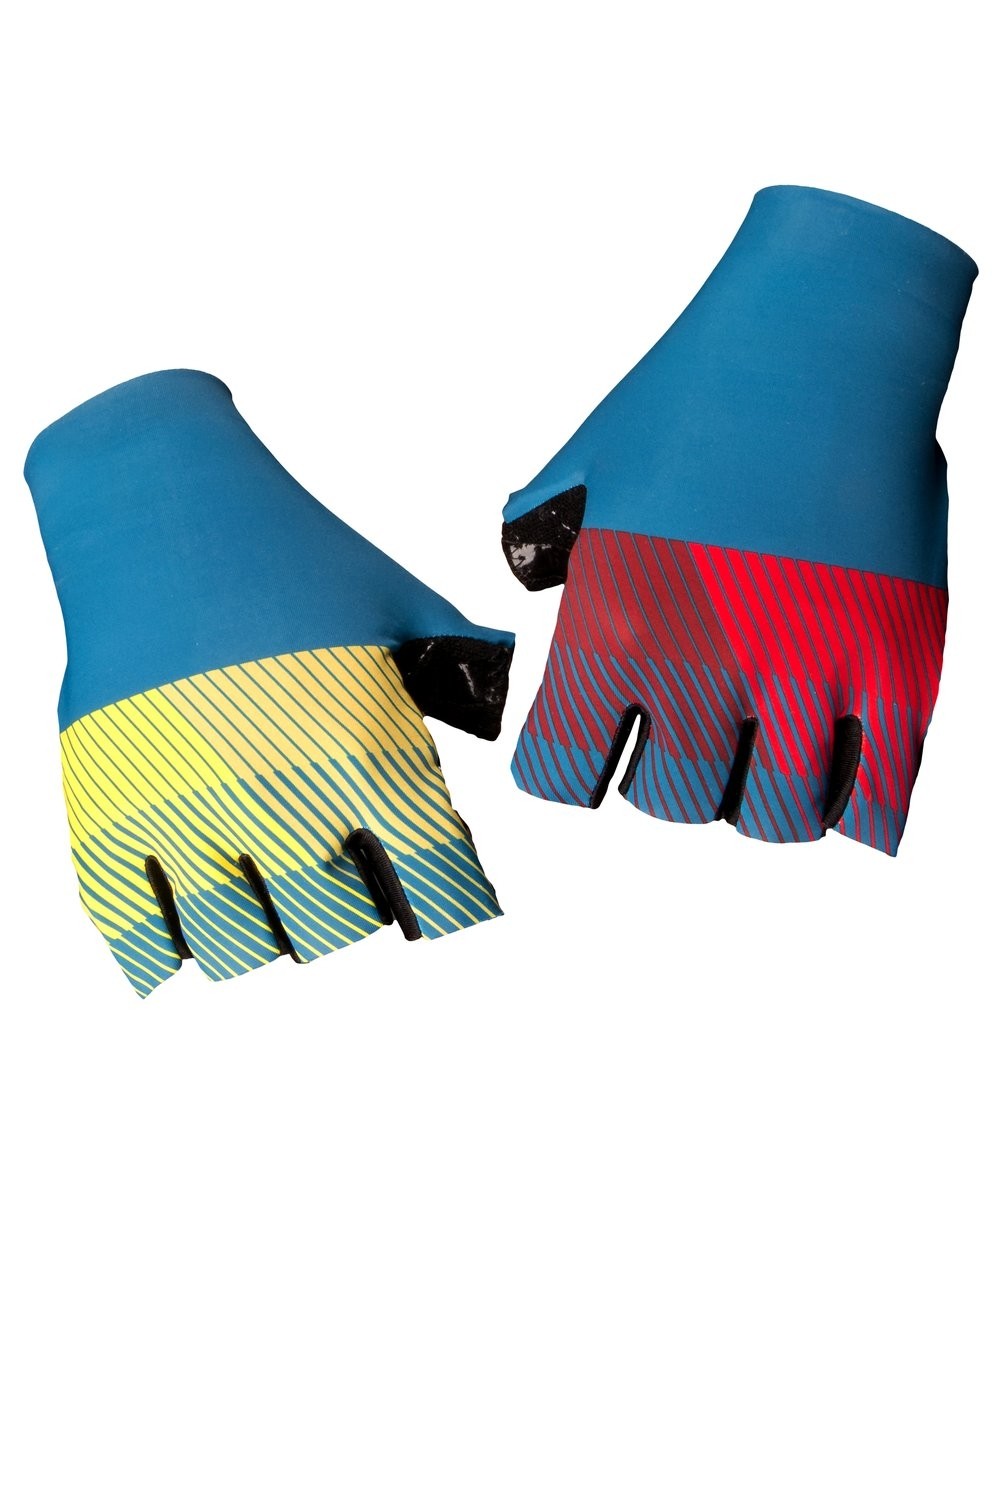 Vermarc chroma sp.l gants de cyclisme petrol